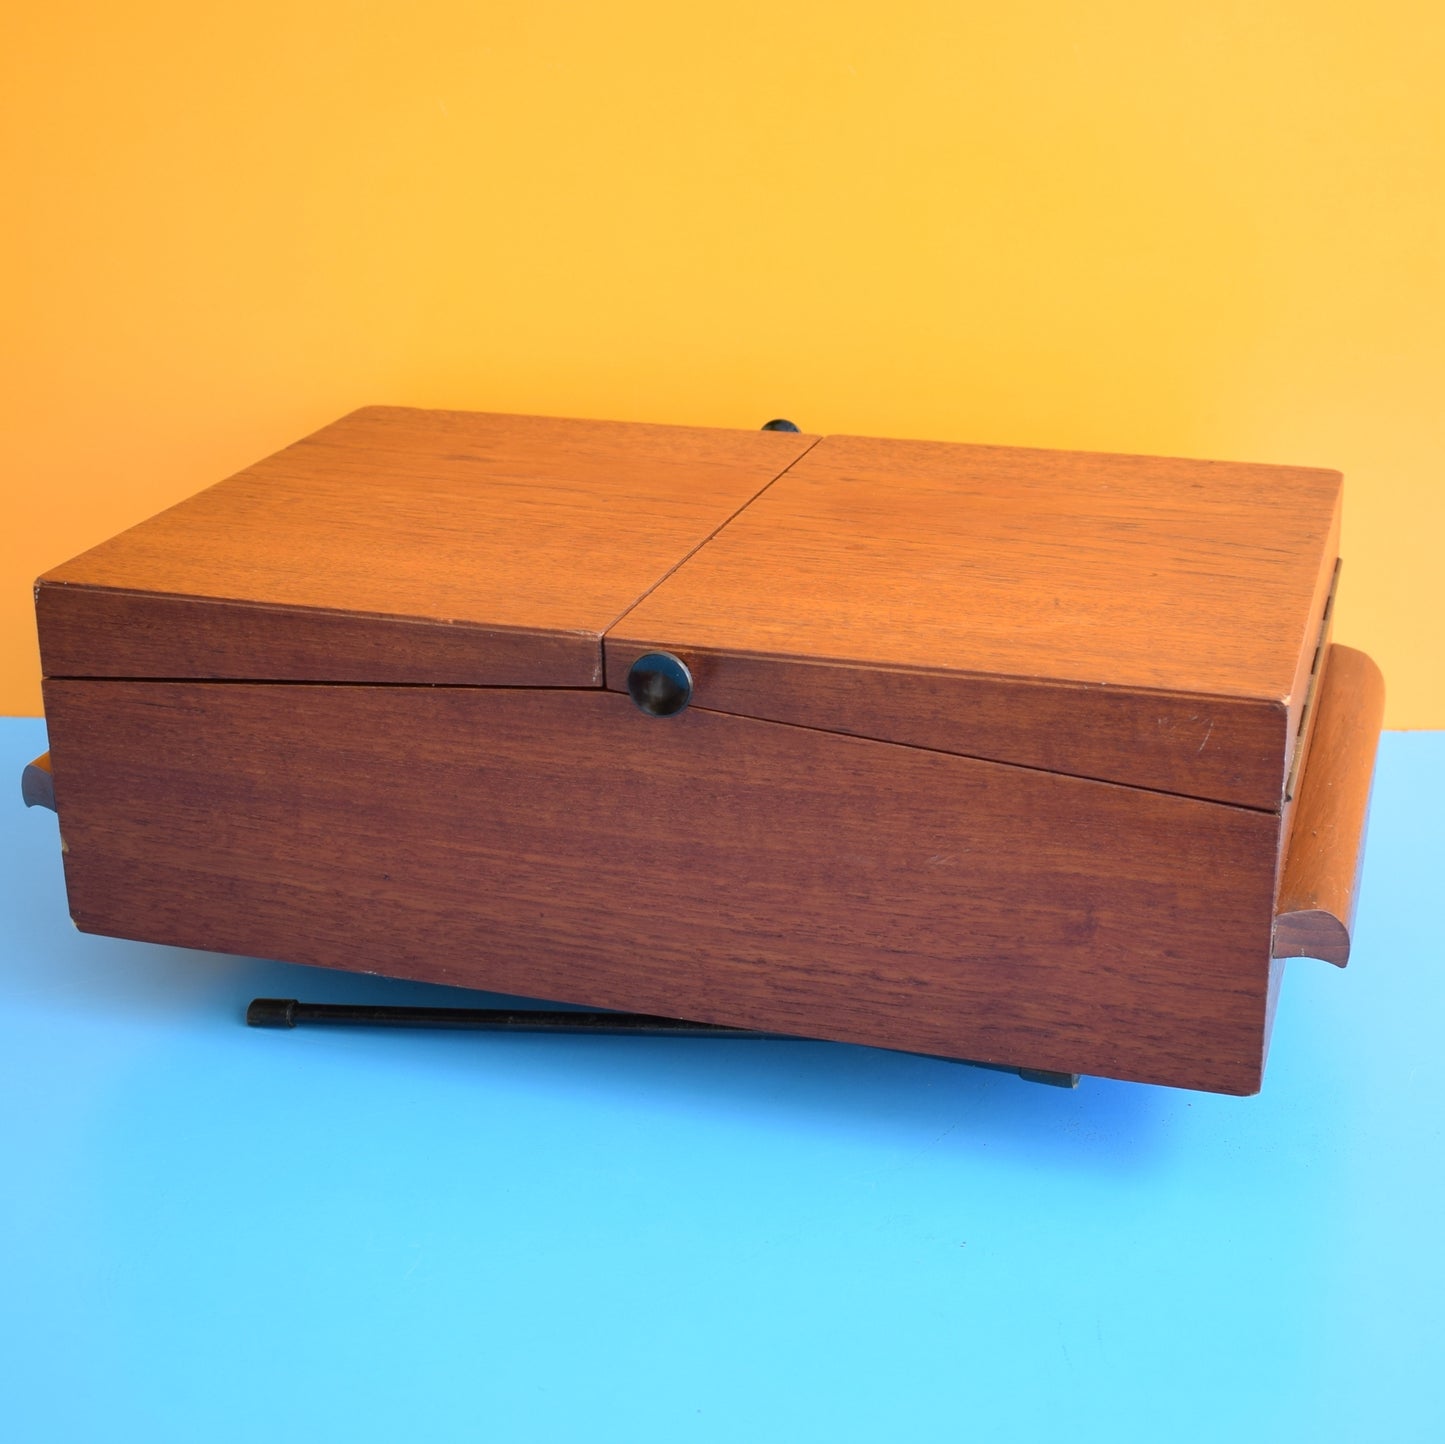 Vintage 1950s Sewing / Hobby Box - Teak